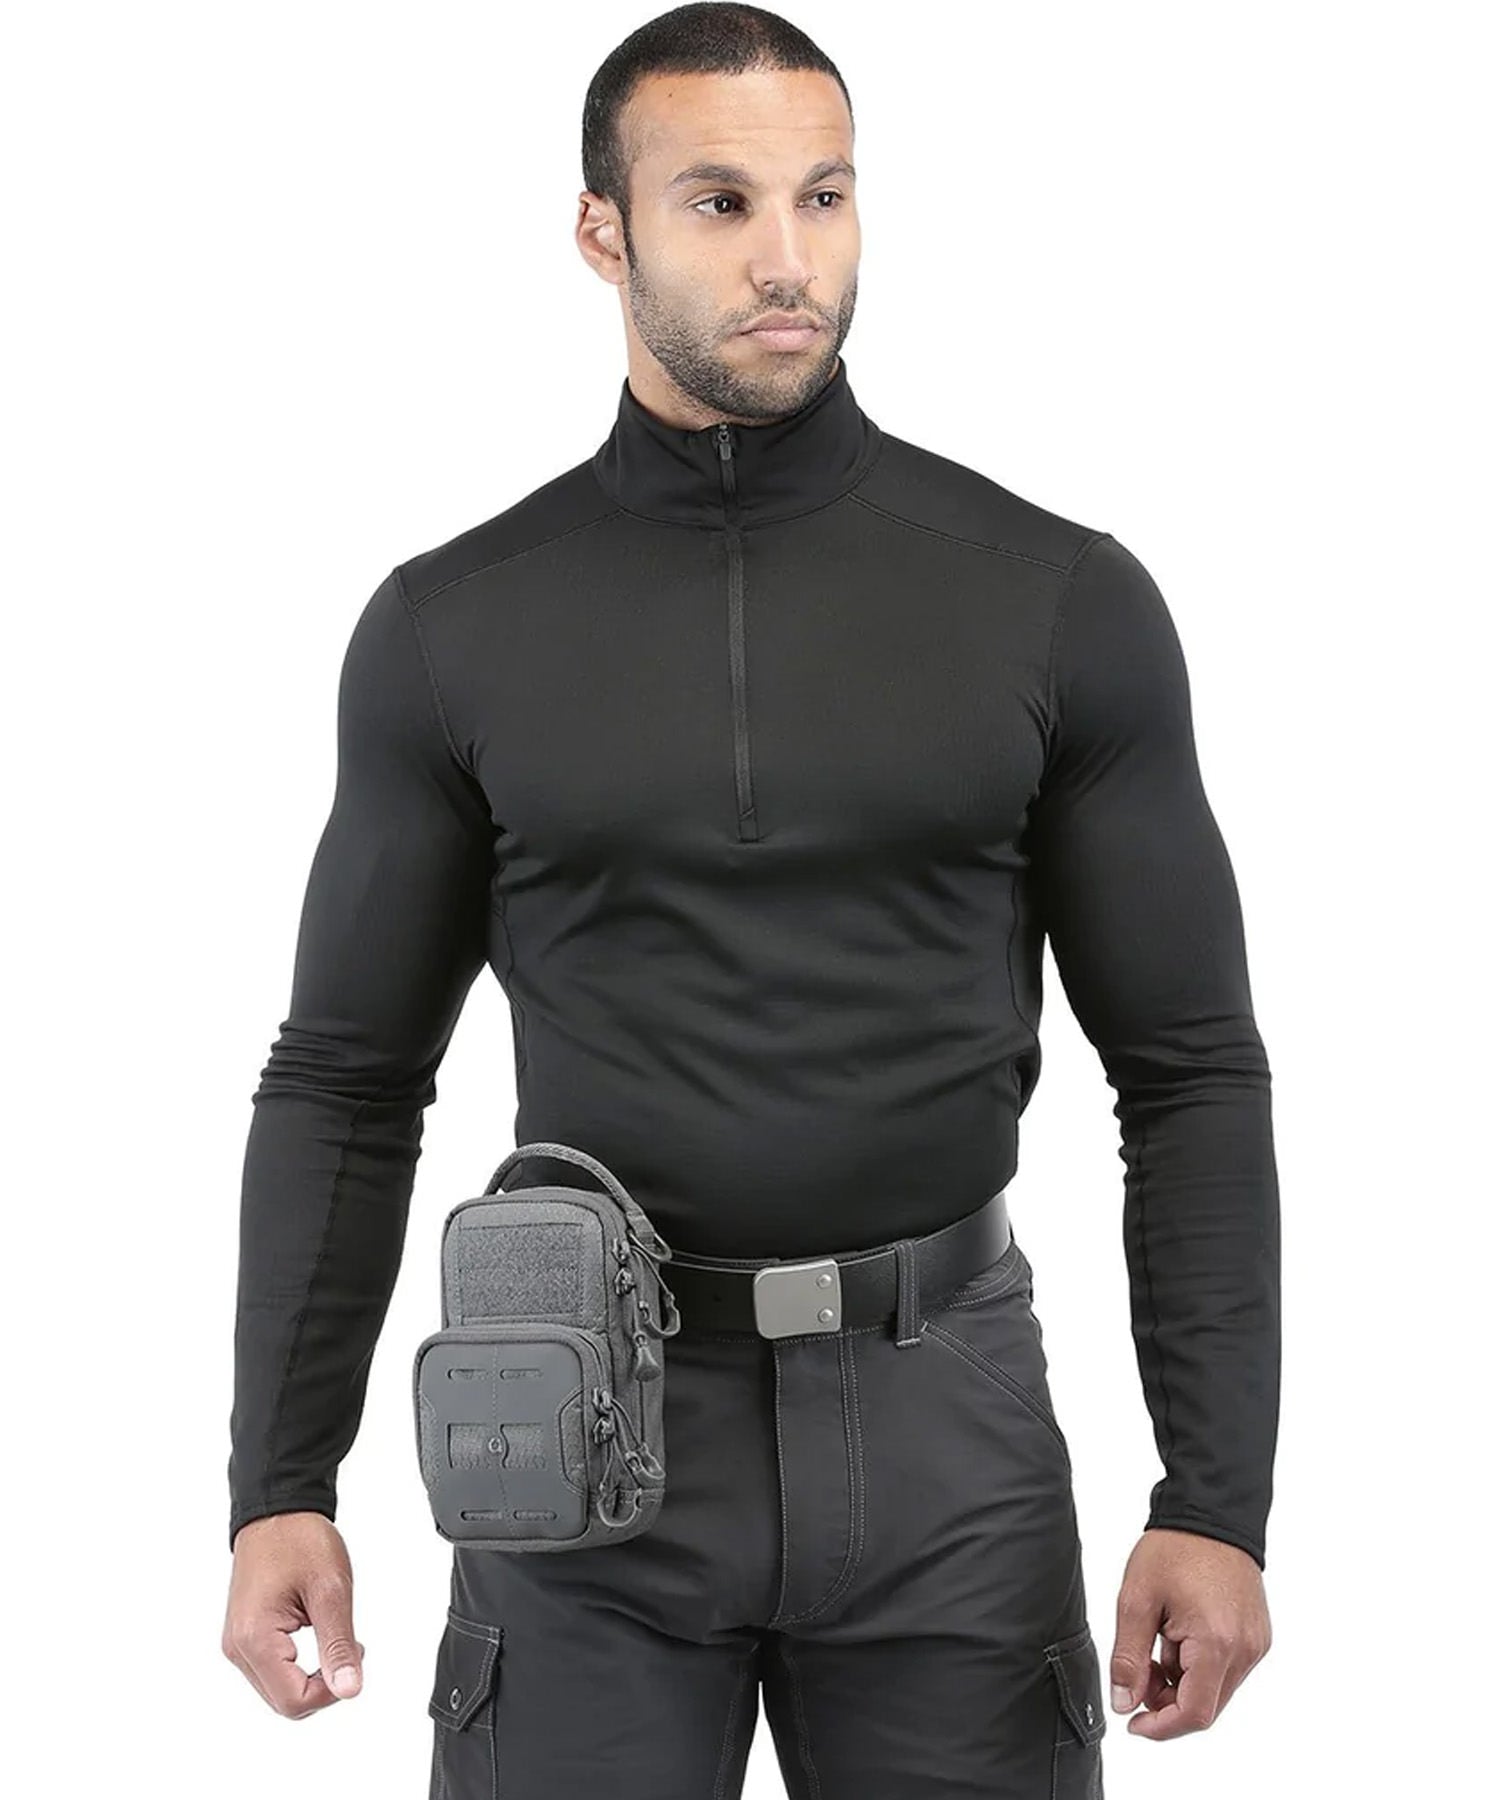 Uomo indossa la pouch maxpedition DEP alla cintura